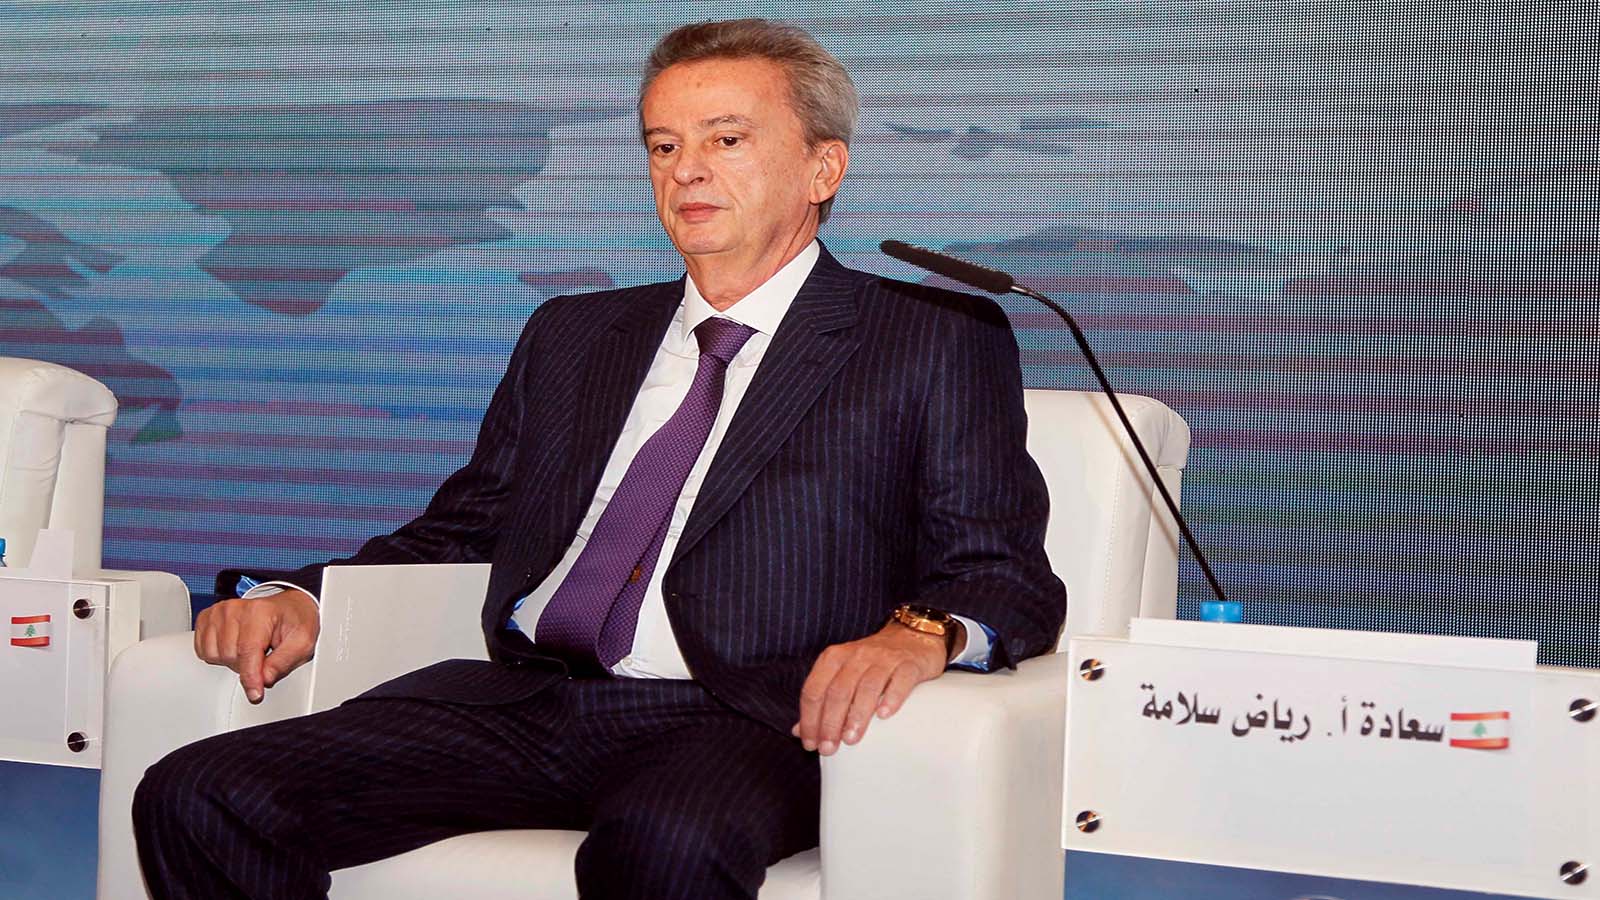 المؤتمر المصرفي العربي في بيروت: الإصلاحات الاقتصادية والحوكمة